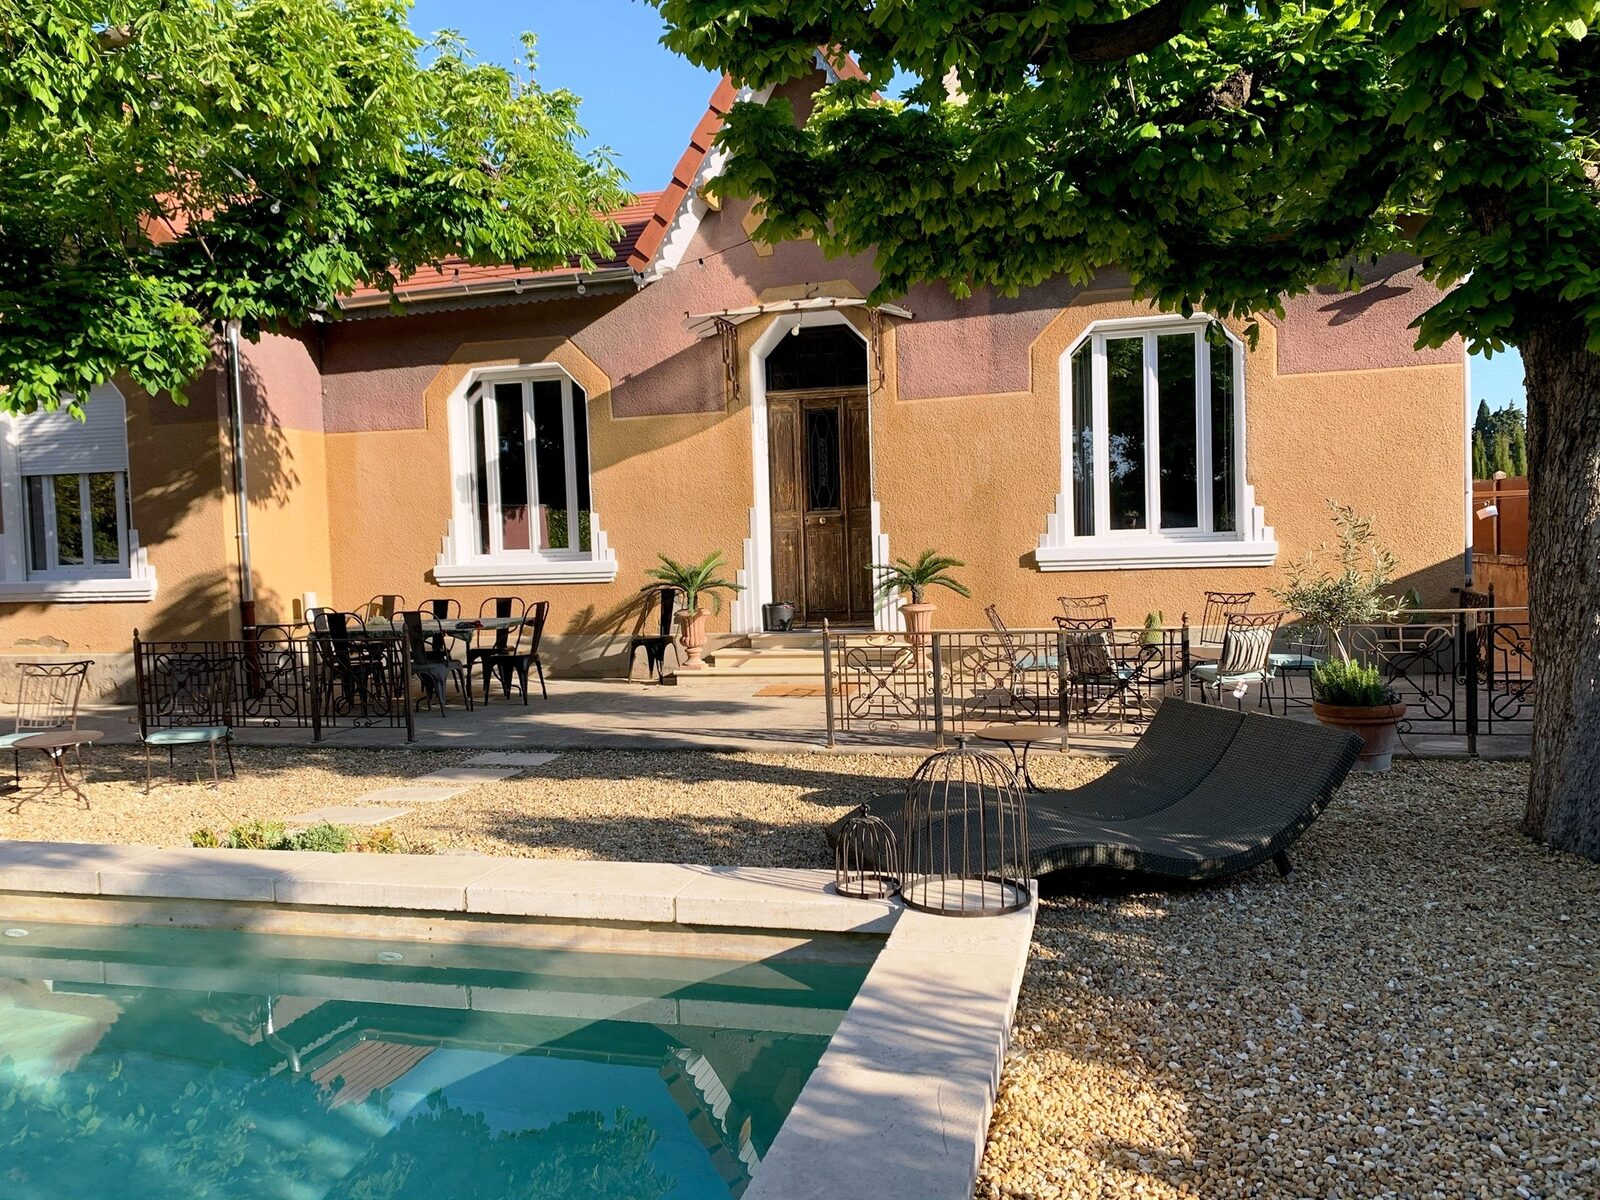 Villa Squirrel - authentiek jaren '30 huis met zwembad